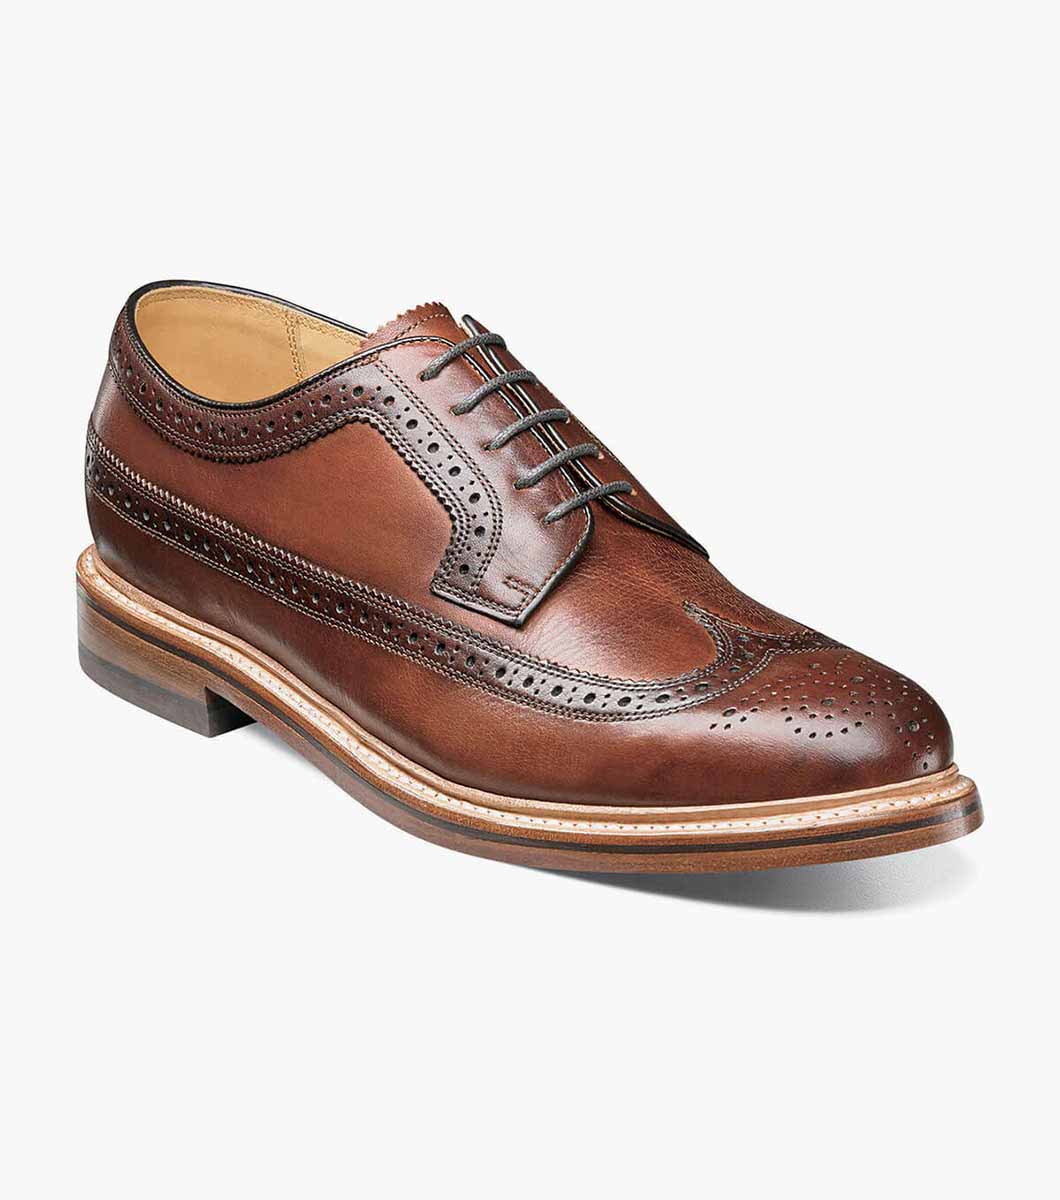 Florsheim Kenmoor II Men's Wingtip Oxford Shoes (Cognac)